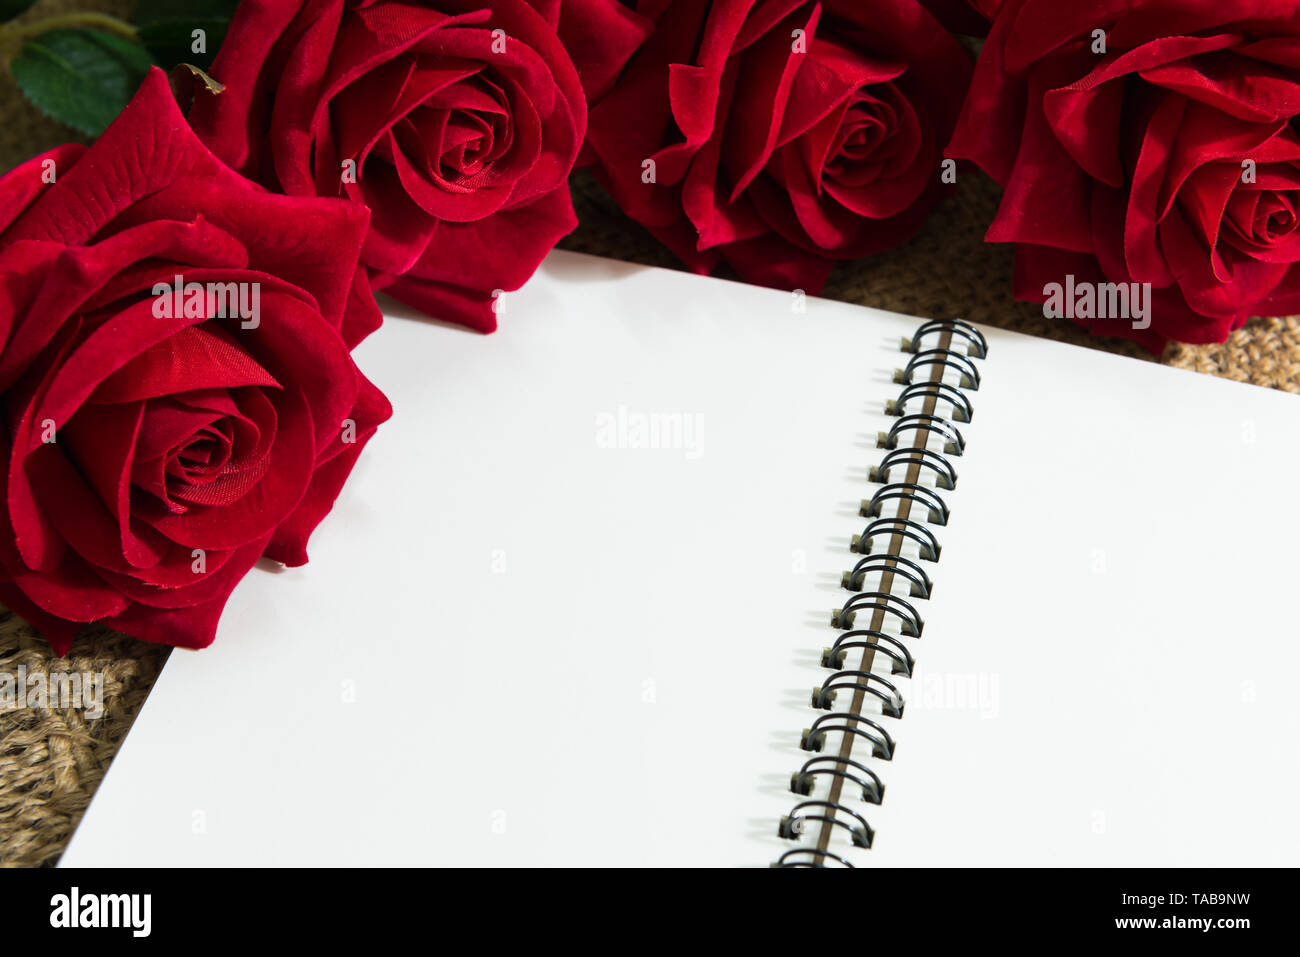 Hogar hecho con páginas de libro. San Valentín concepto con rosas rojas  Fotografía de stock - Alamy